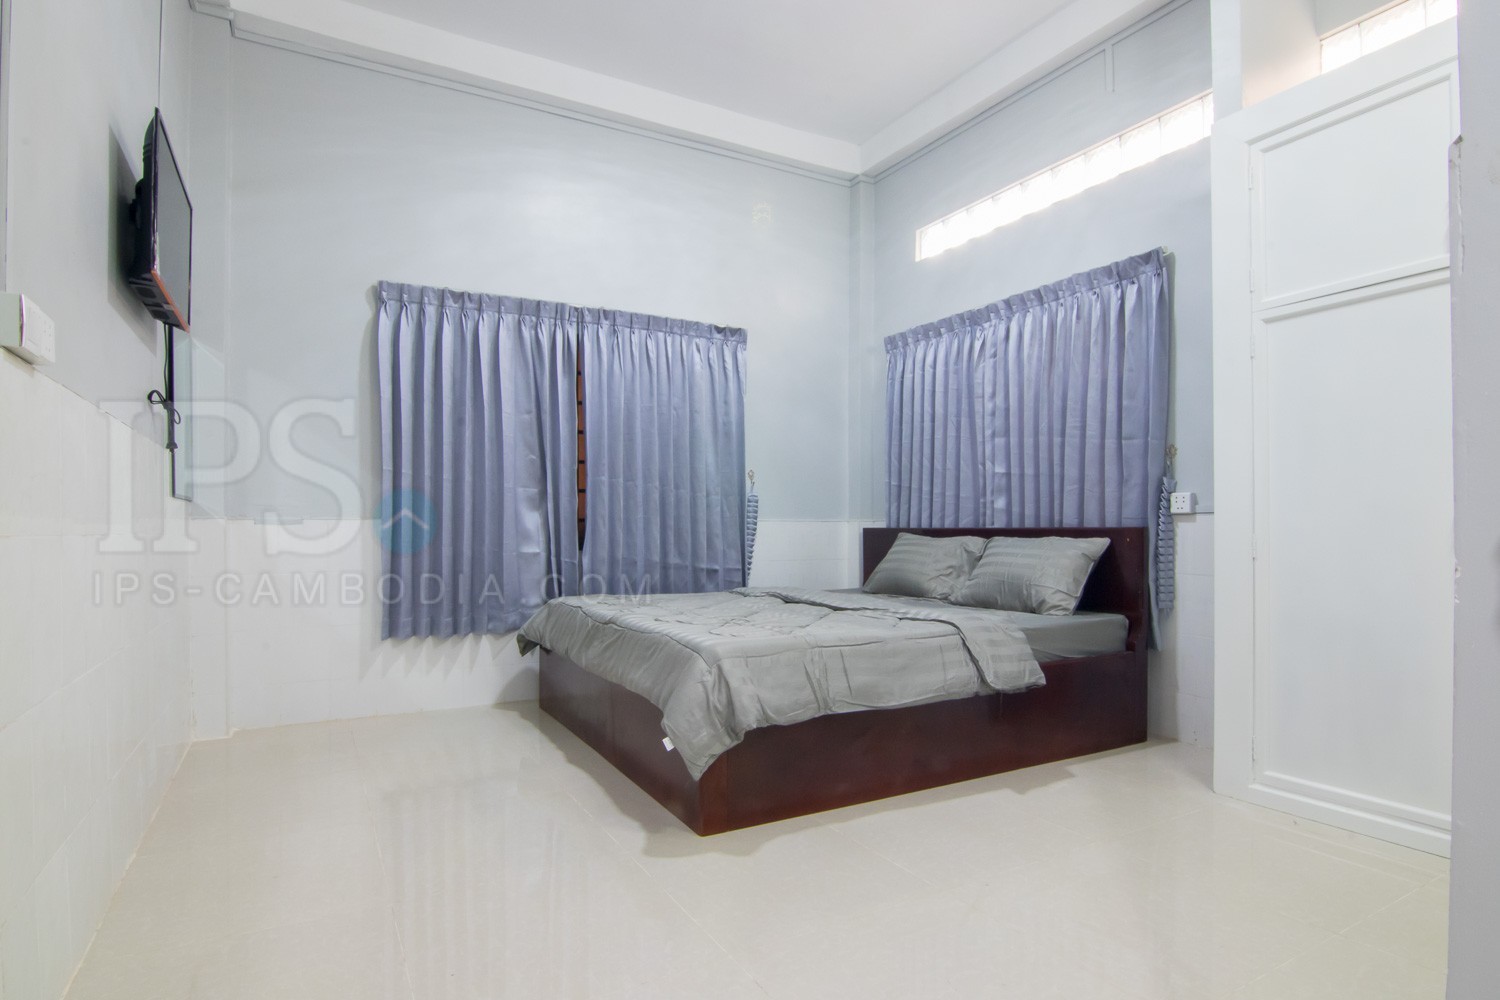 Studio Room For Rent Night Market Area Siem Reap 9261 Ips